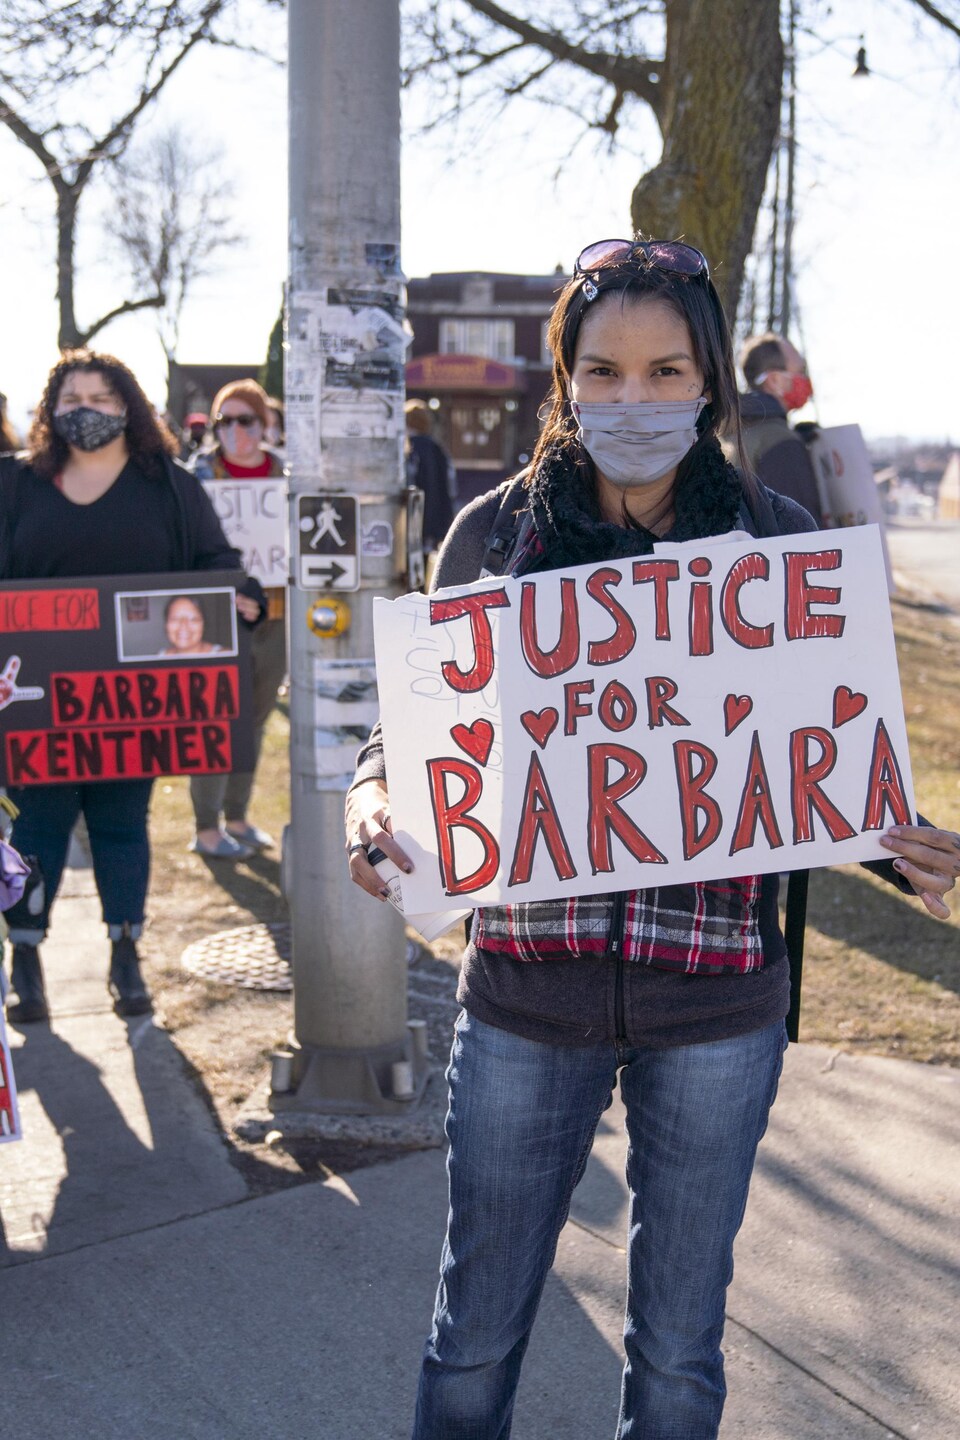 Une manifestation lors du procès de Brayden Bushby à Thunder Bay, en novembre 2020. Il a jeté un attelage de remorque sur Barbara Kentner, une femme des Premières Nations qui est décédée plusieurs mois après l'agression de 2017. 